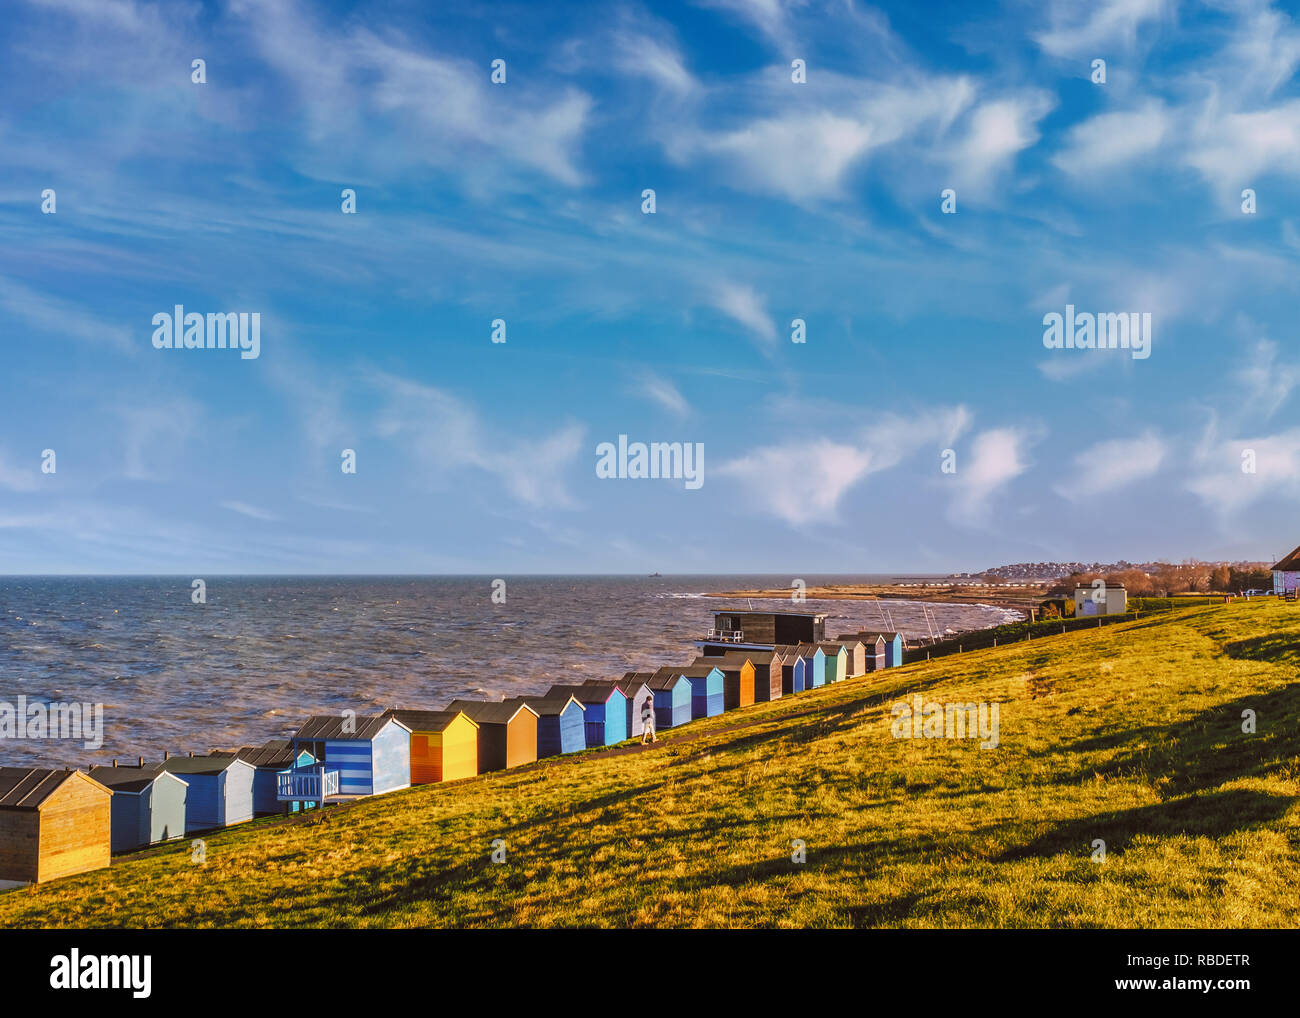 Rangée de cabines de plage le long de la côte à Whitstable, Tankerton, Kent. L'herbe verte pentes sont derrière les baraques et un homme se promener le long de l'herbe. L Banque D'Images